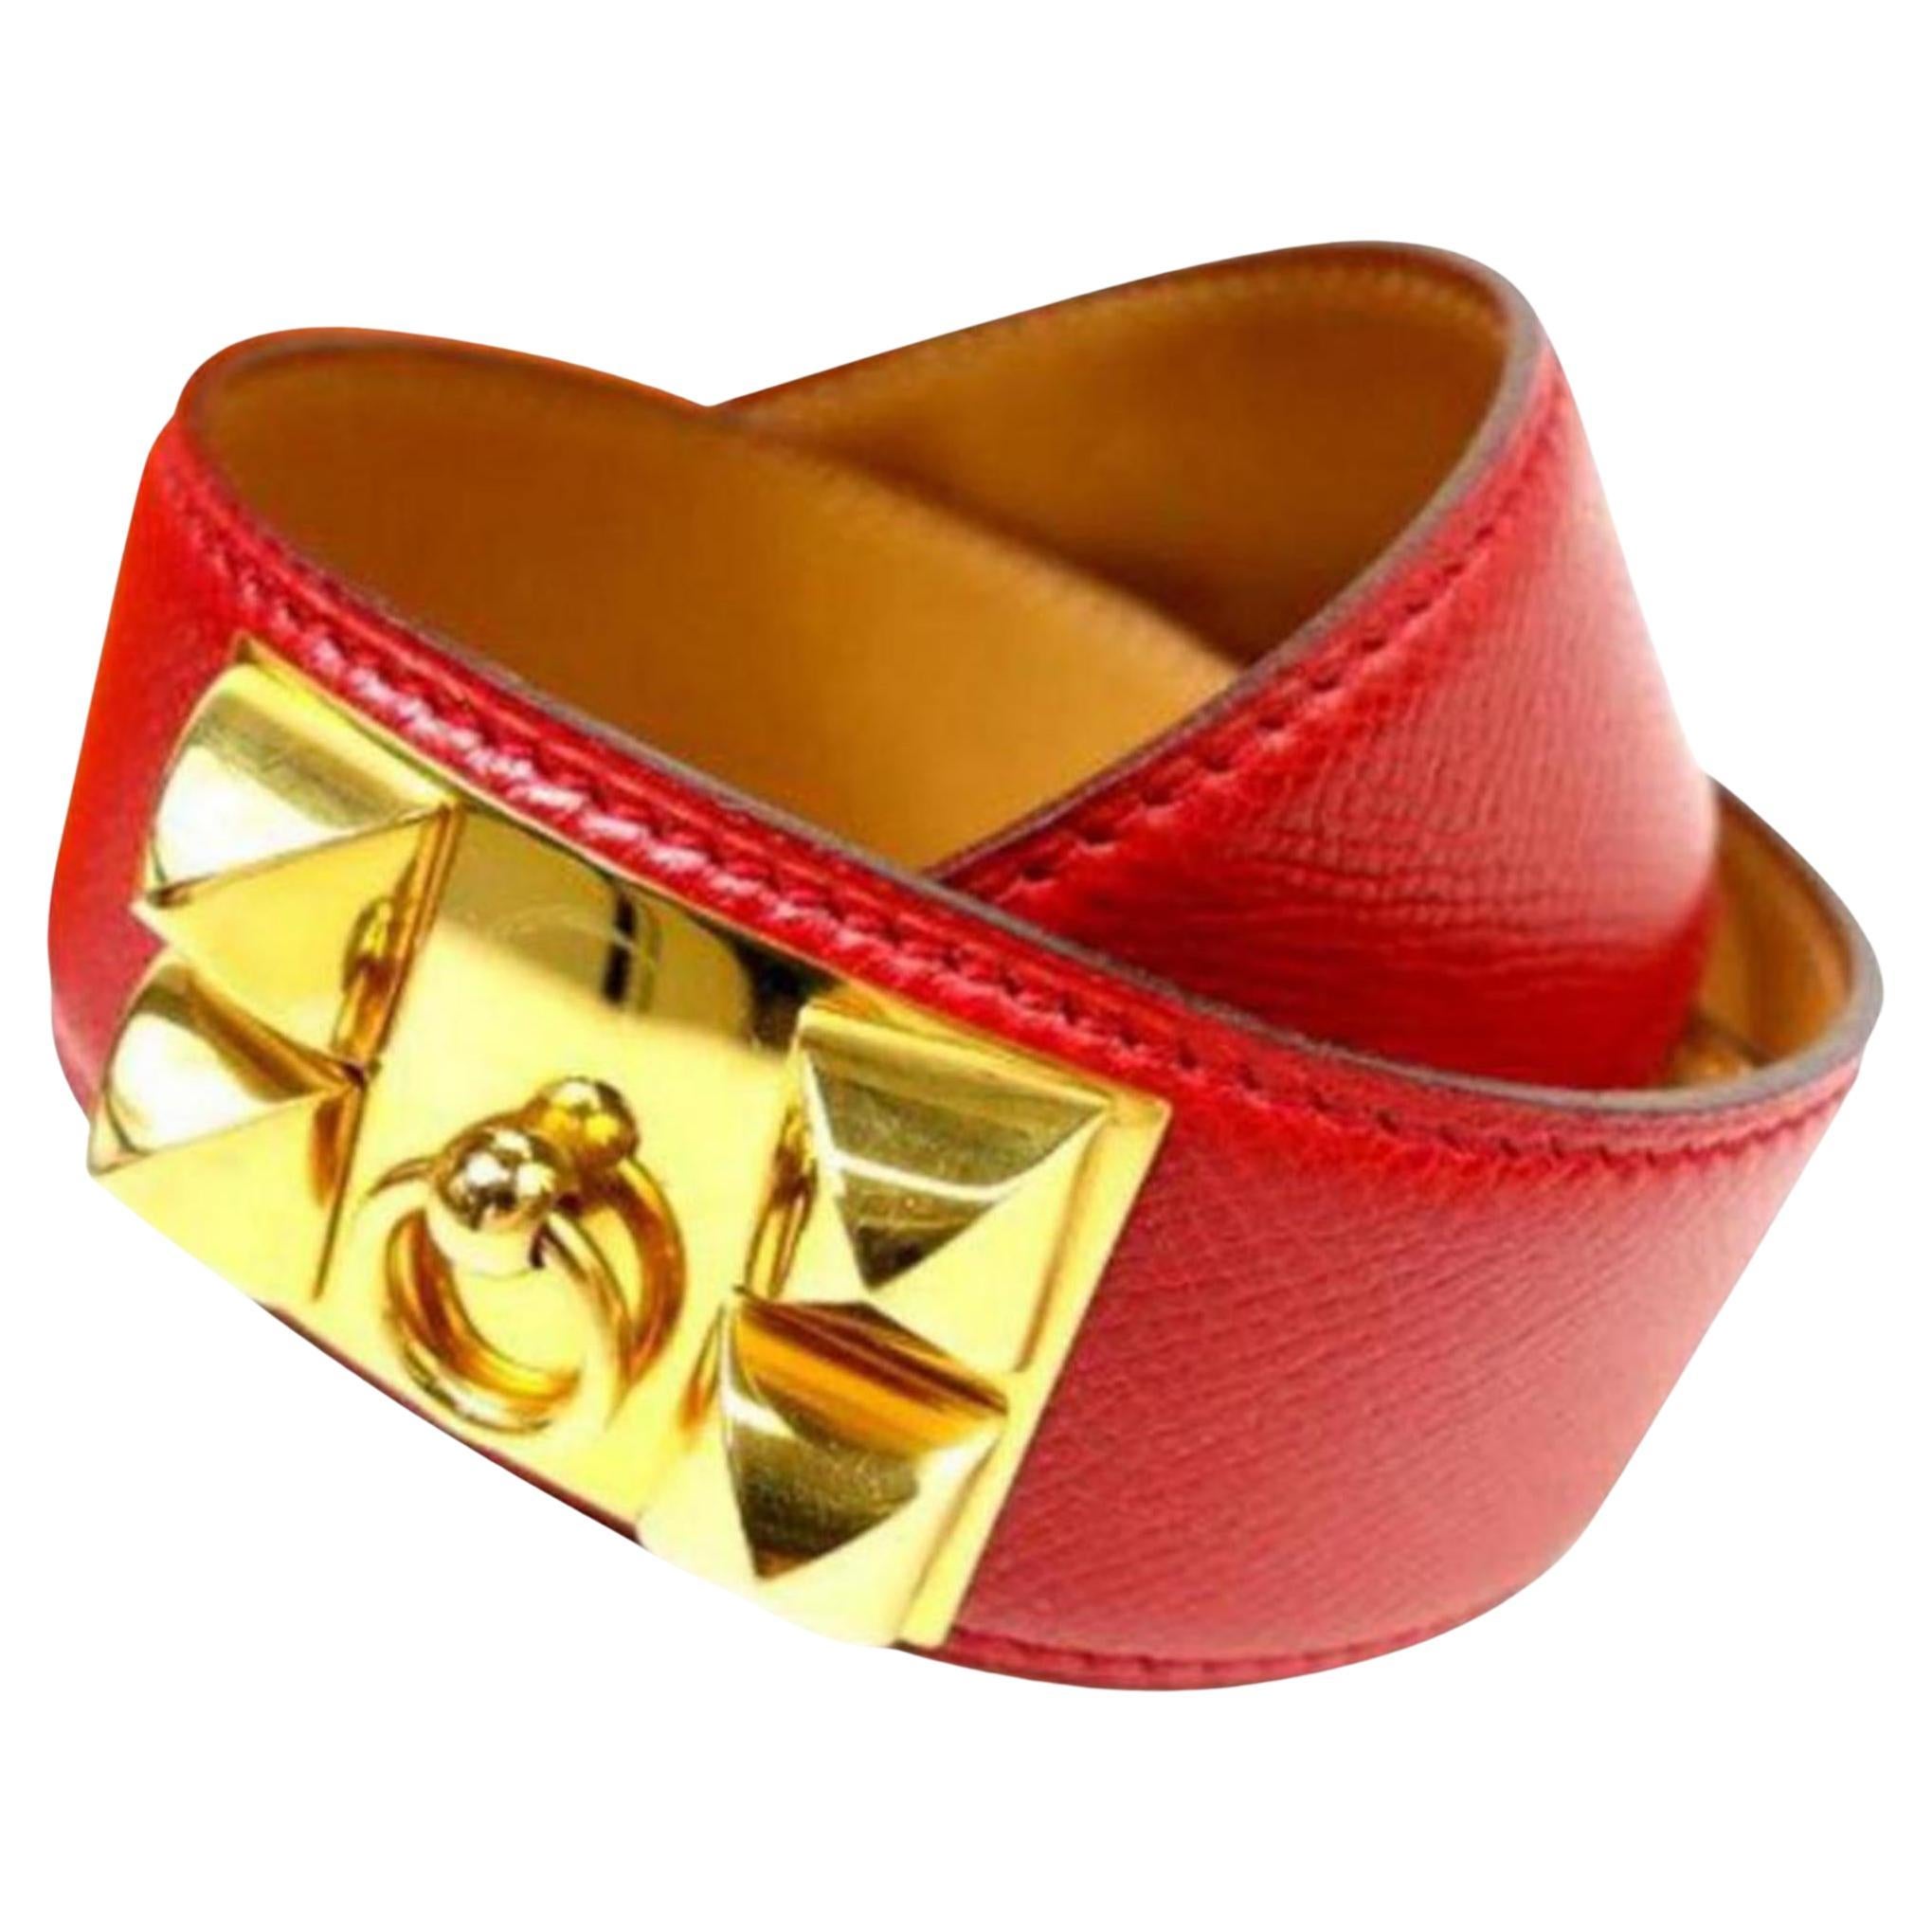 Hermès Gold Hardware Red Leather Medor CDC Belt 41h57